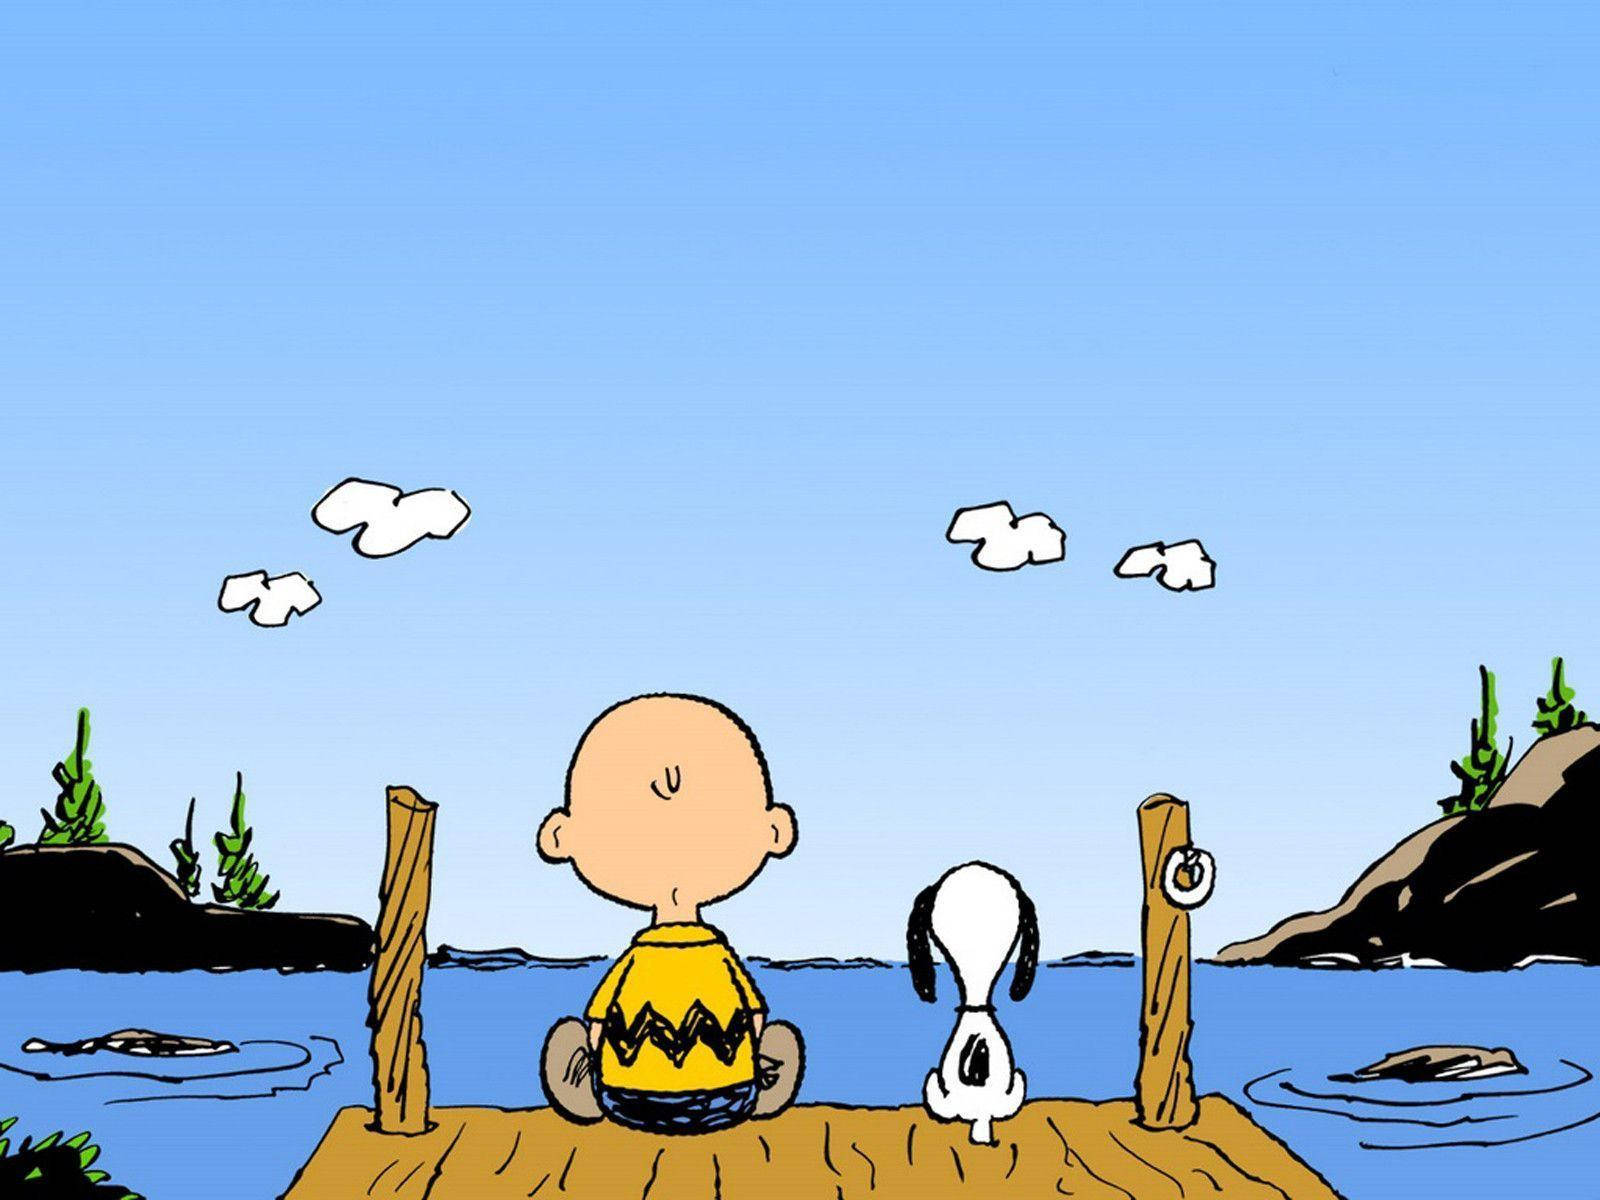 Peaceful Charlie Brown